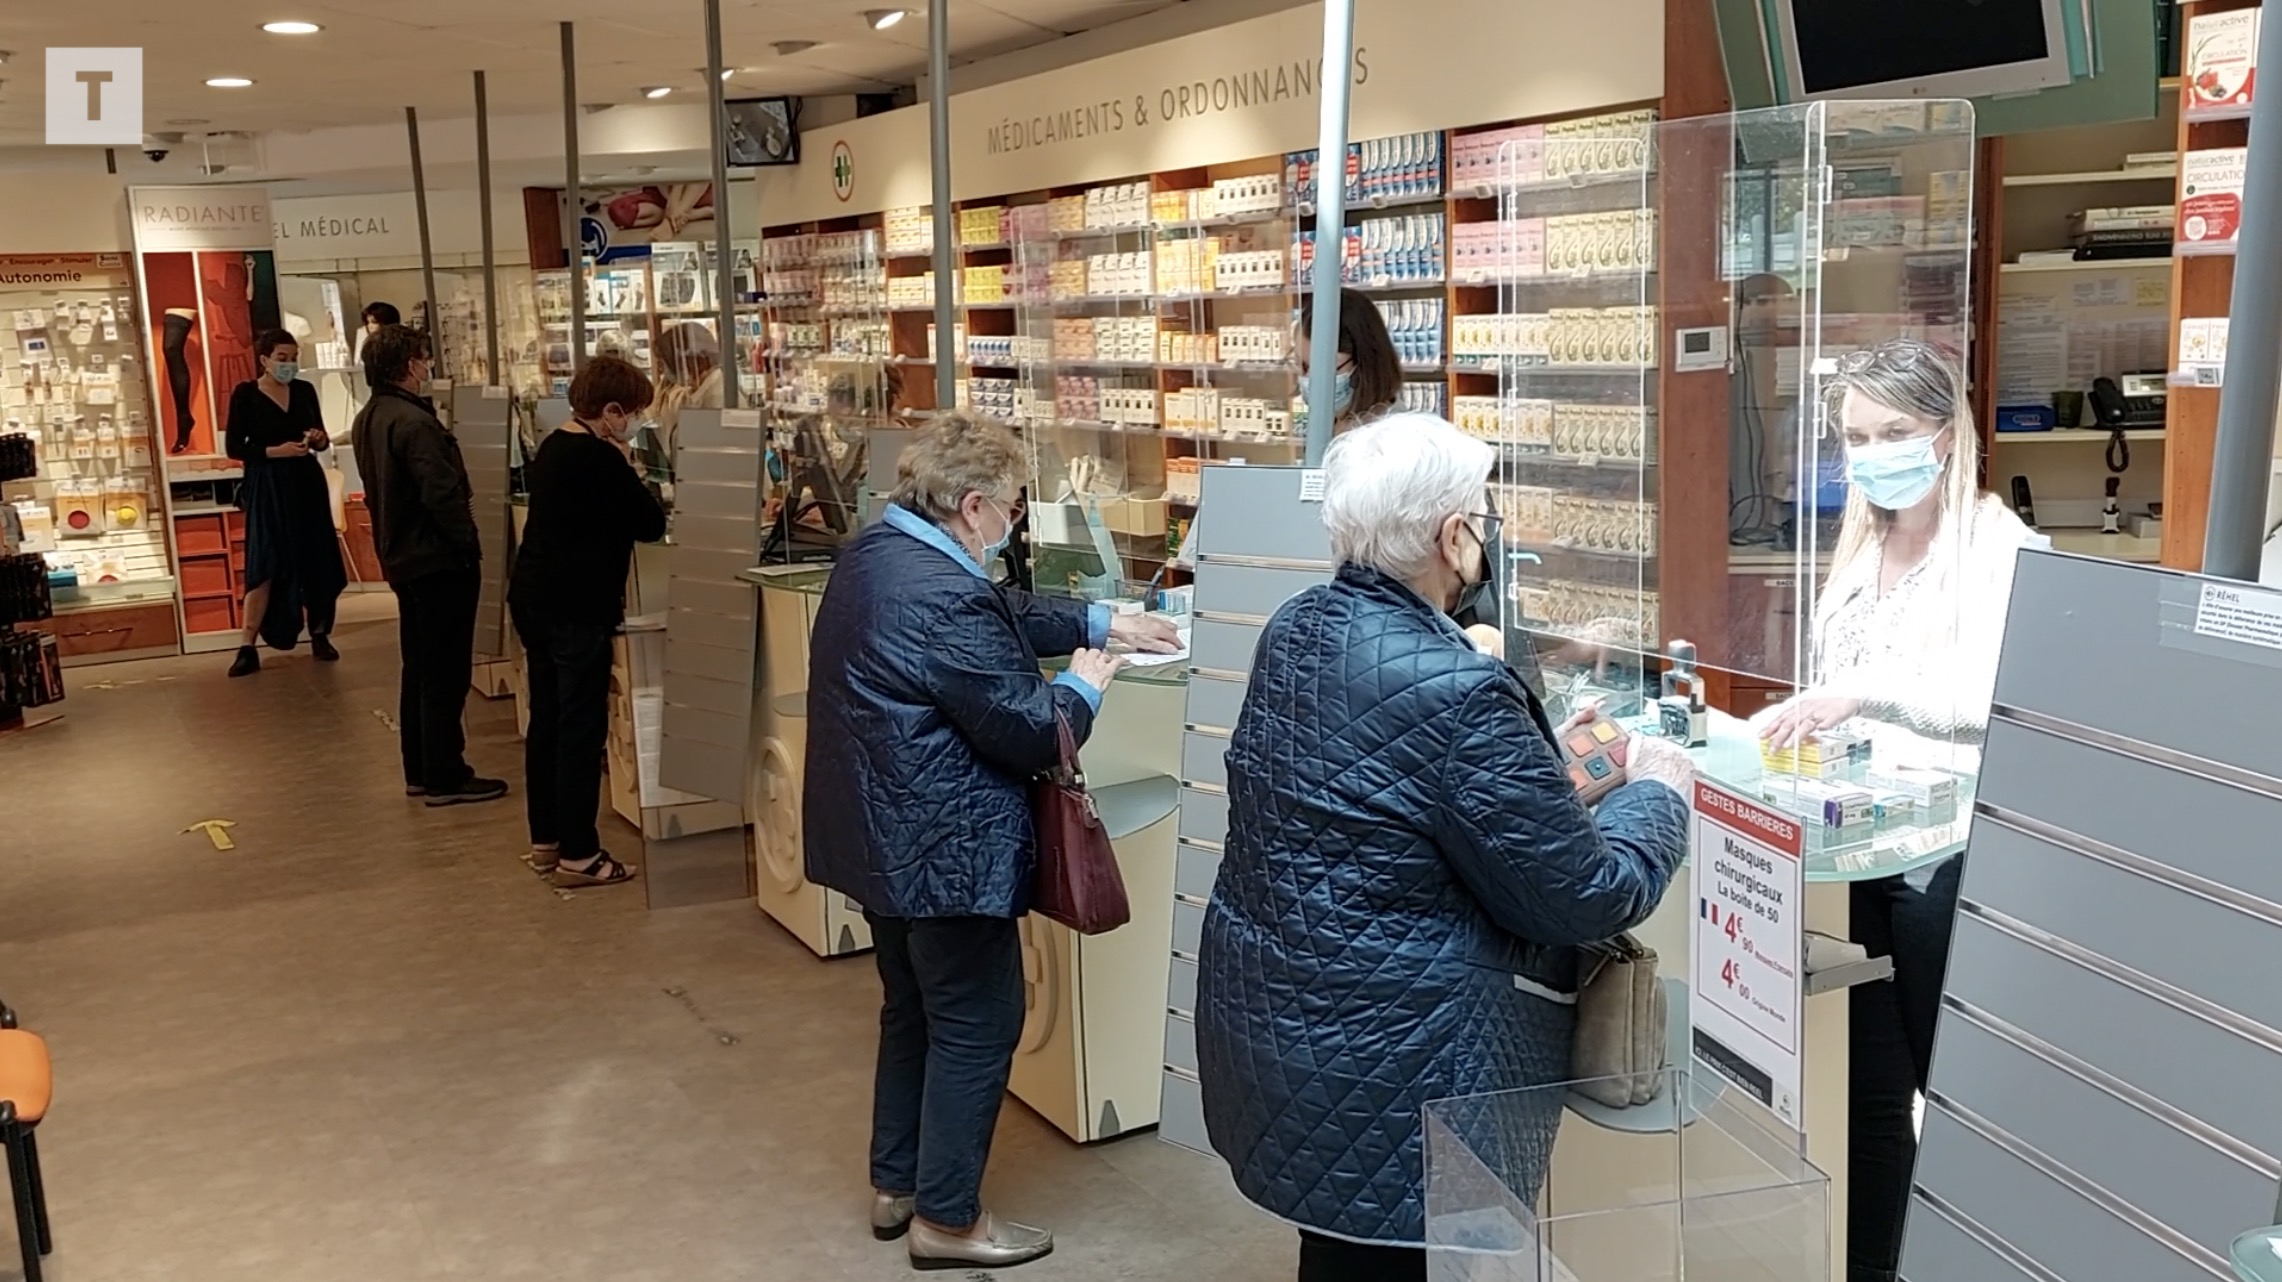 50 pharmaciens bretons à l’avant-garde pour soigner les petits maux (Le Télégramme)